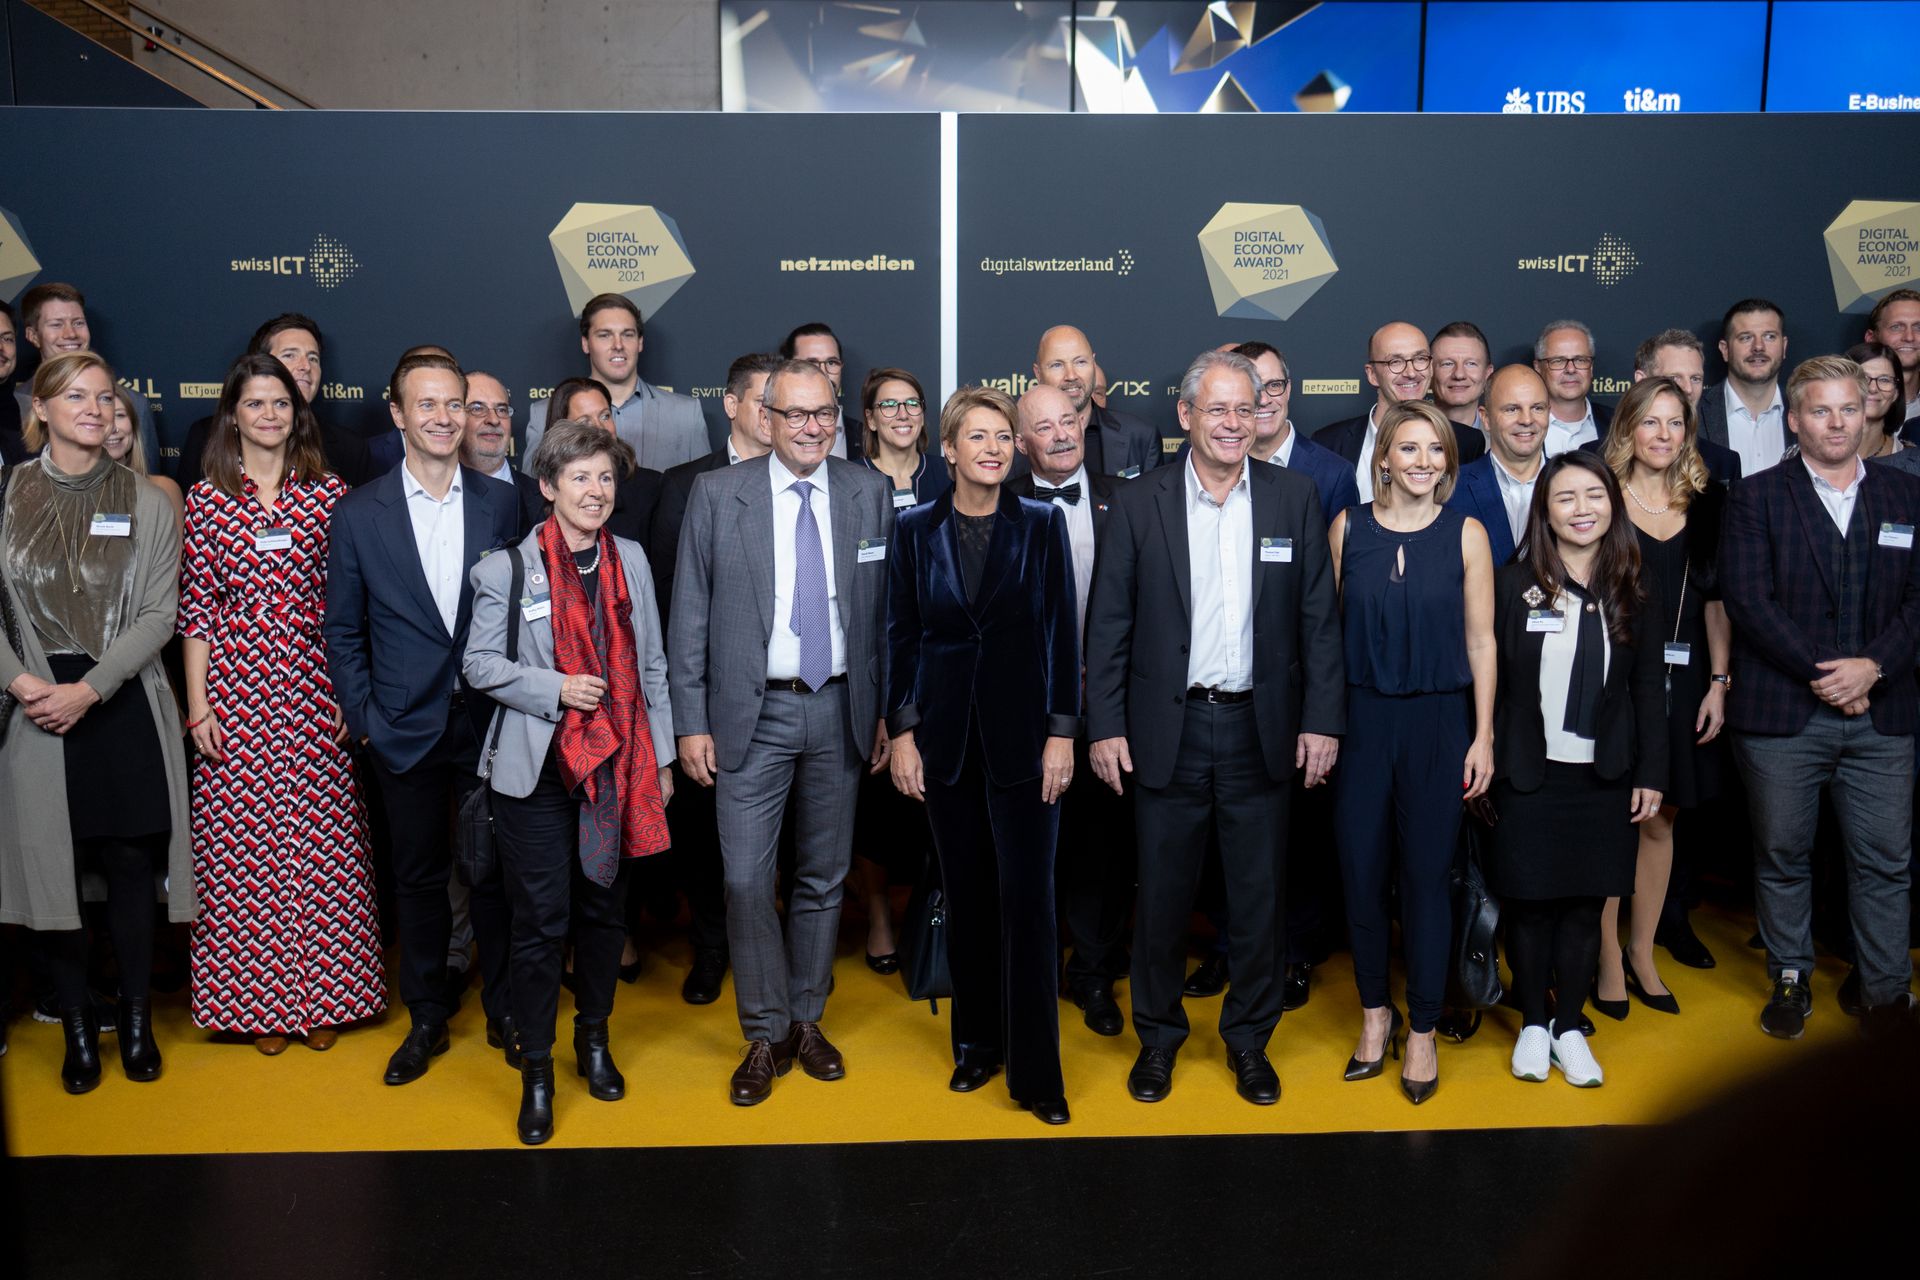 Diễu hành VIP tại lễ trao giải "Digital Economy Award" nhân ngày "Digital Day Thụy Sĩ" ngày 10/2021/XNUMX